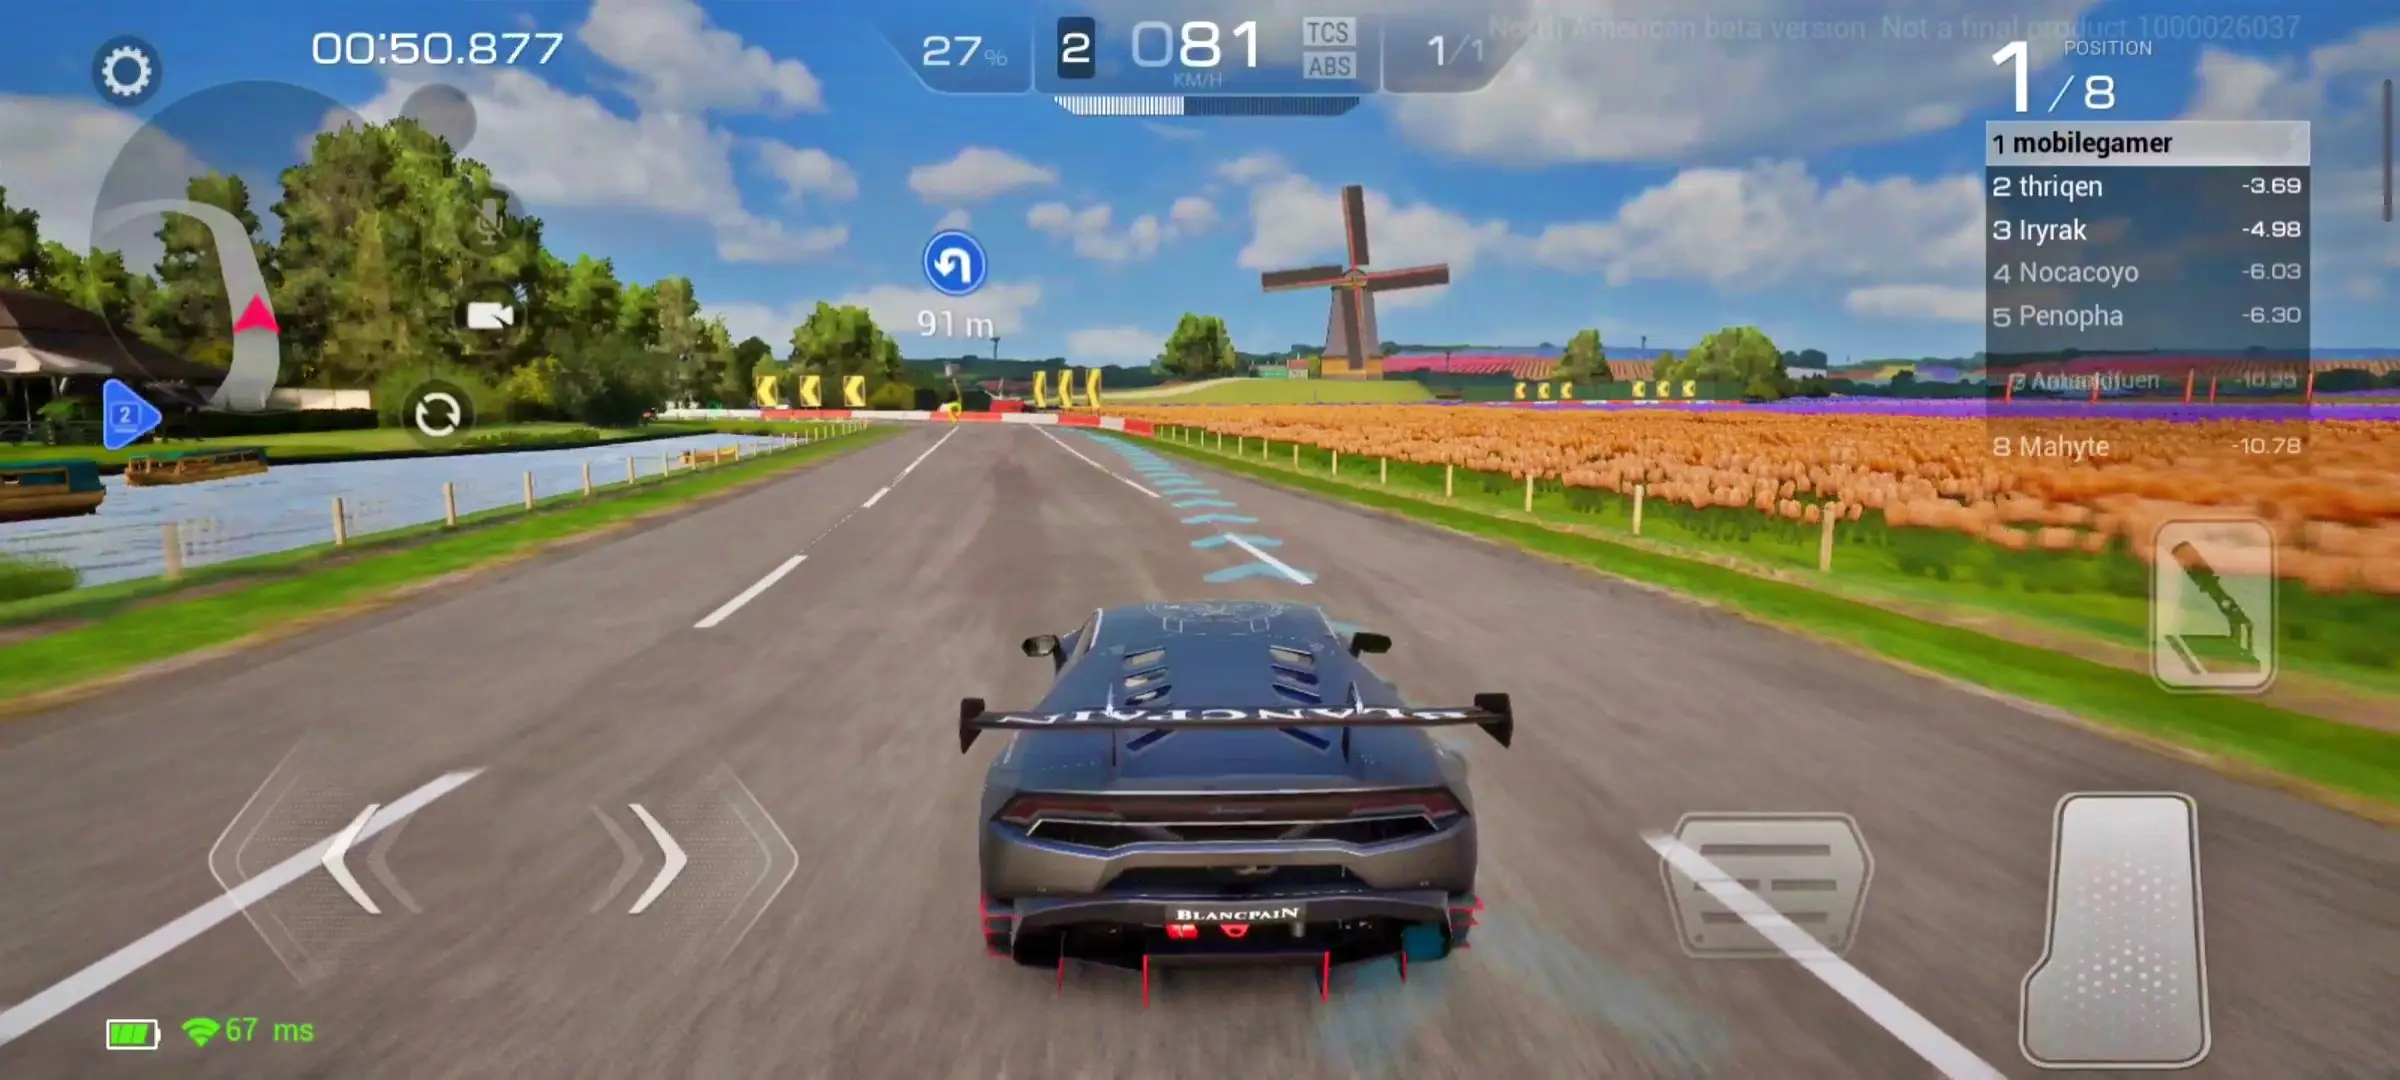 racing-master-android-novo-teste-beta Testamos Racing Master, novo simulador de corrida da NetEase para Android e iOS